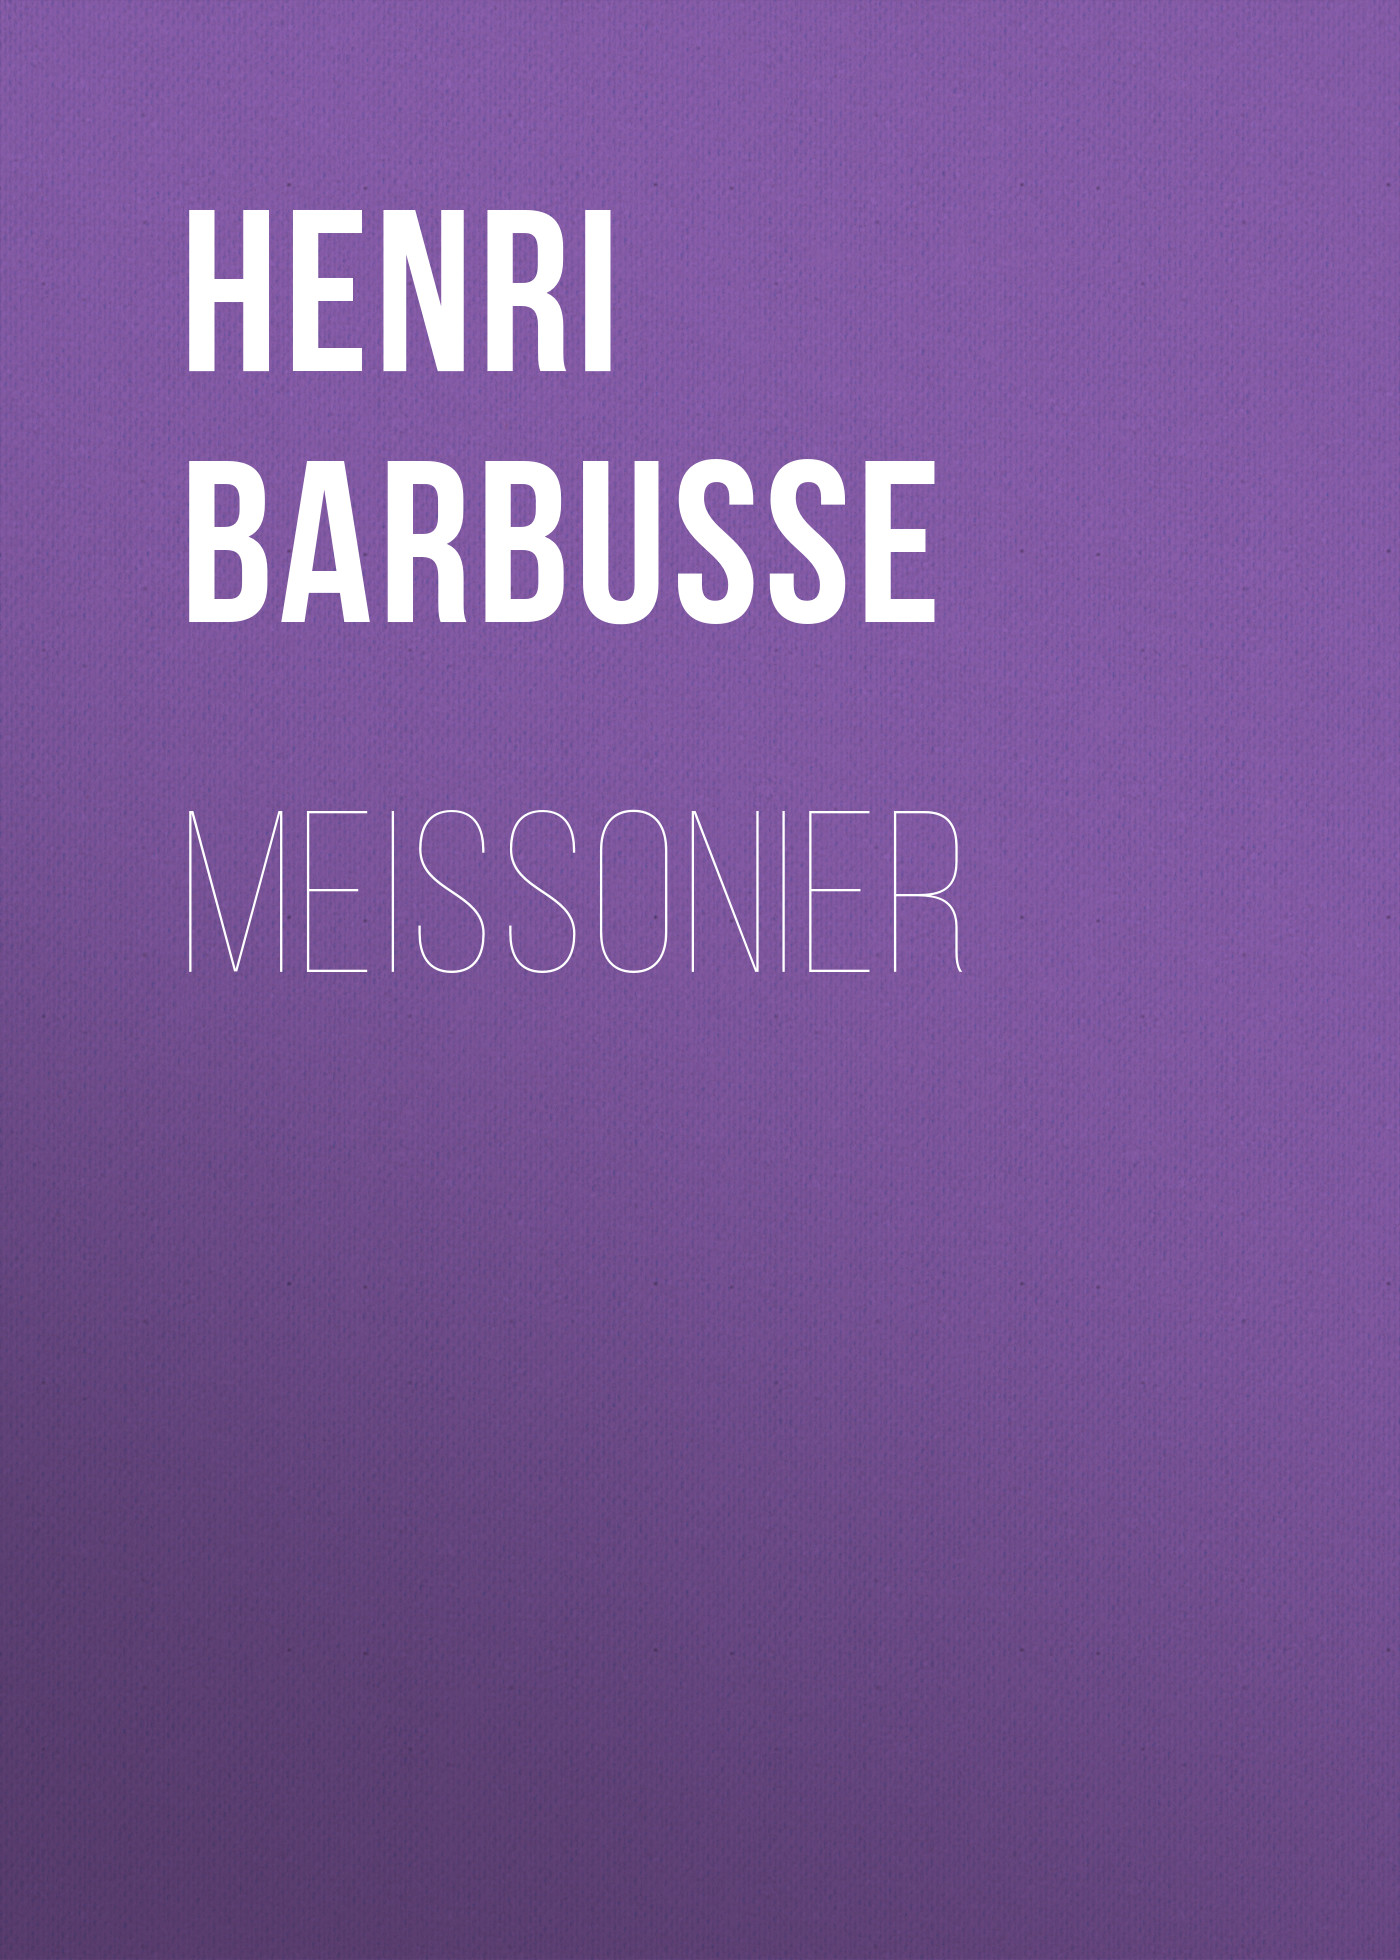 Книга Meissonier из серии , созданная Henri Barbusse, может относится к жанру Зарубежная старинная литература, Зарубежная классика. Стоимость электронной книги Meissonier с идентификатором 24174396 составляет 0 руб.